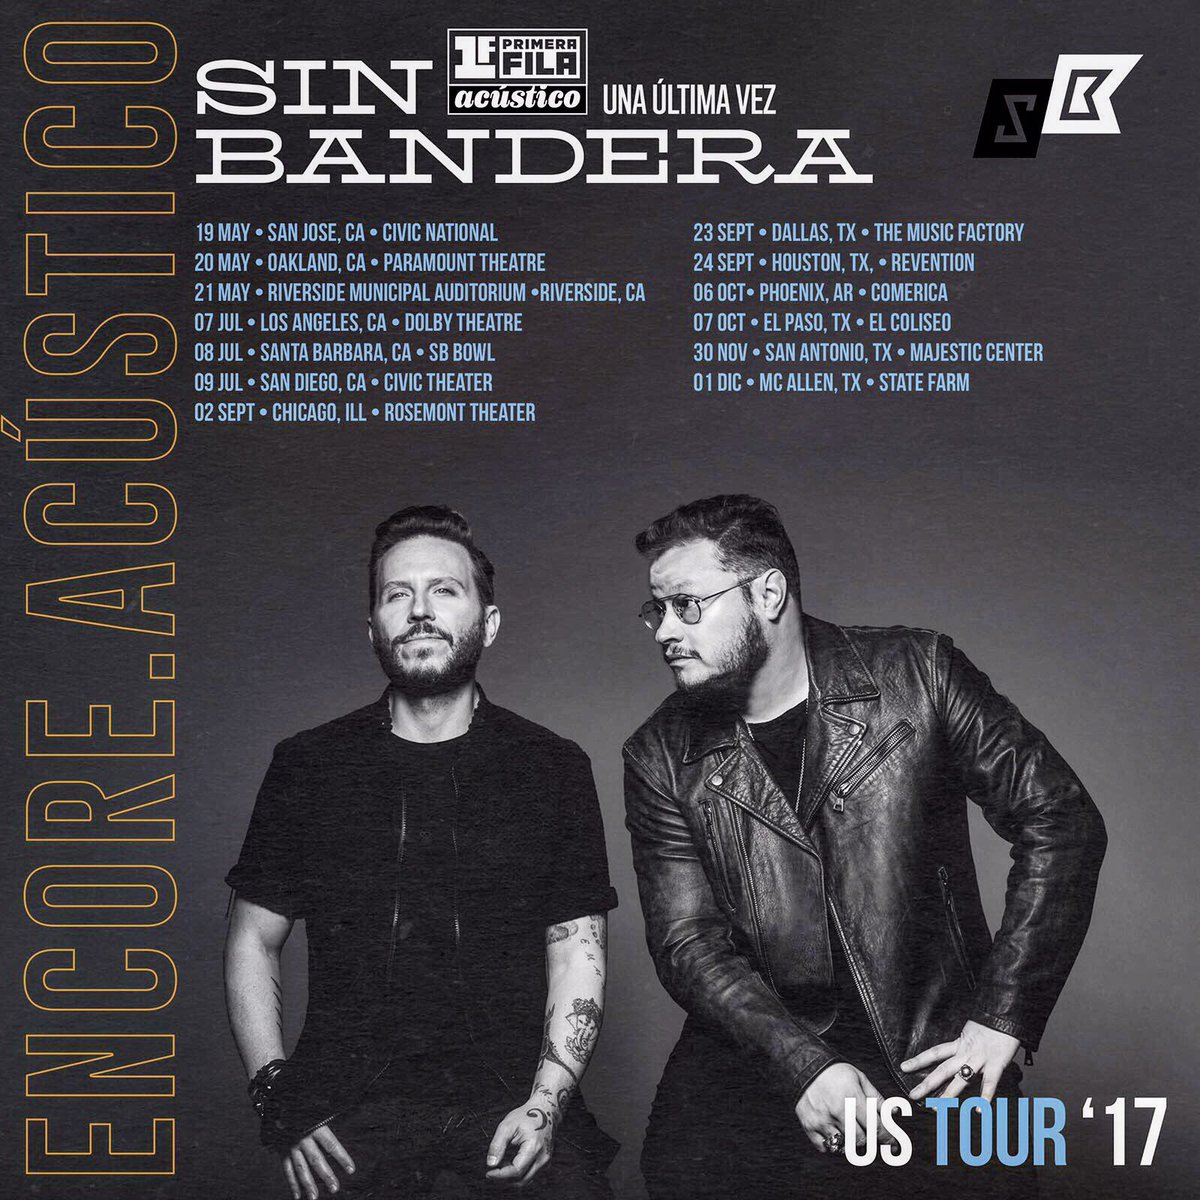 Concierto de Sin Bandera, Una Última Vez Tour, en San Antonio, TX, Estados Unidos, Jueves, 30 de noviembre de 2017